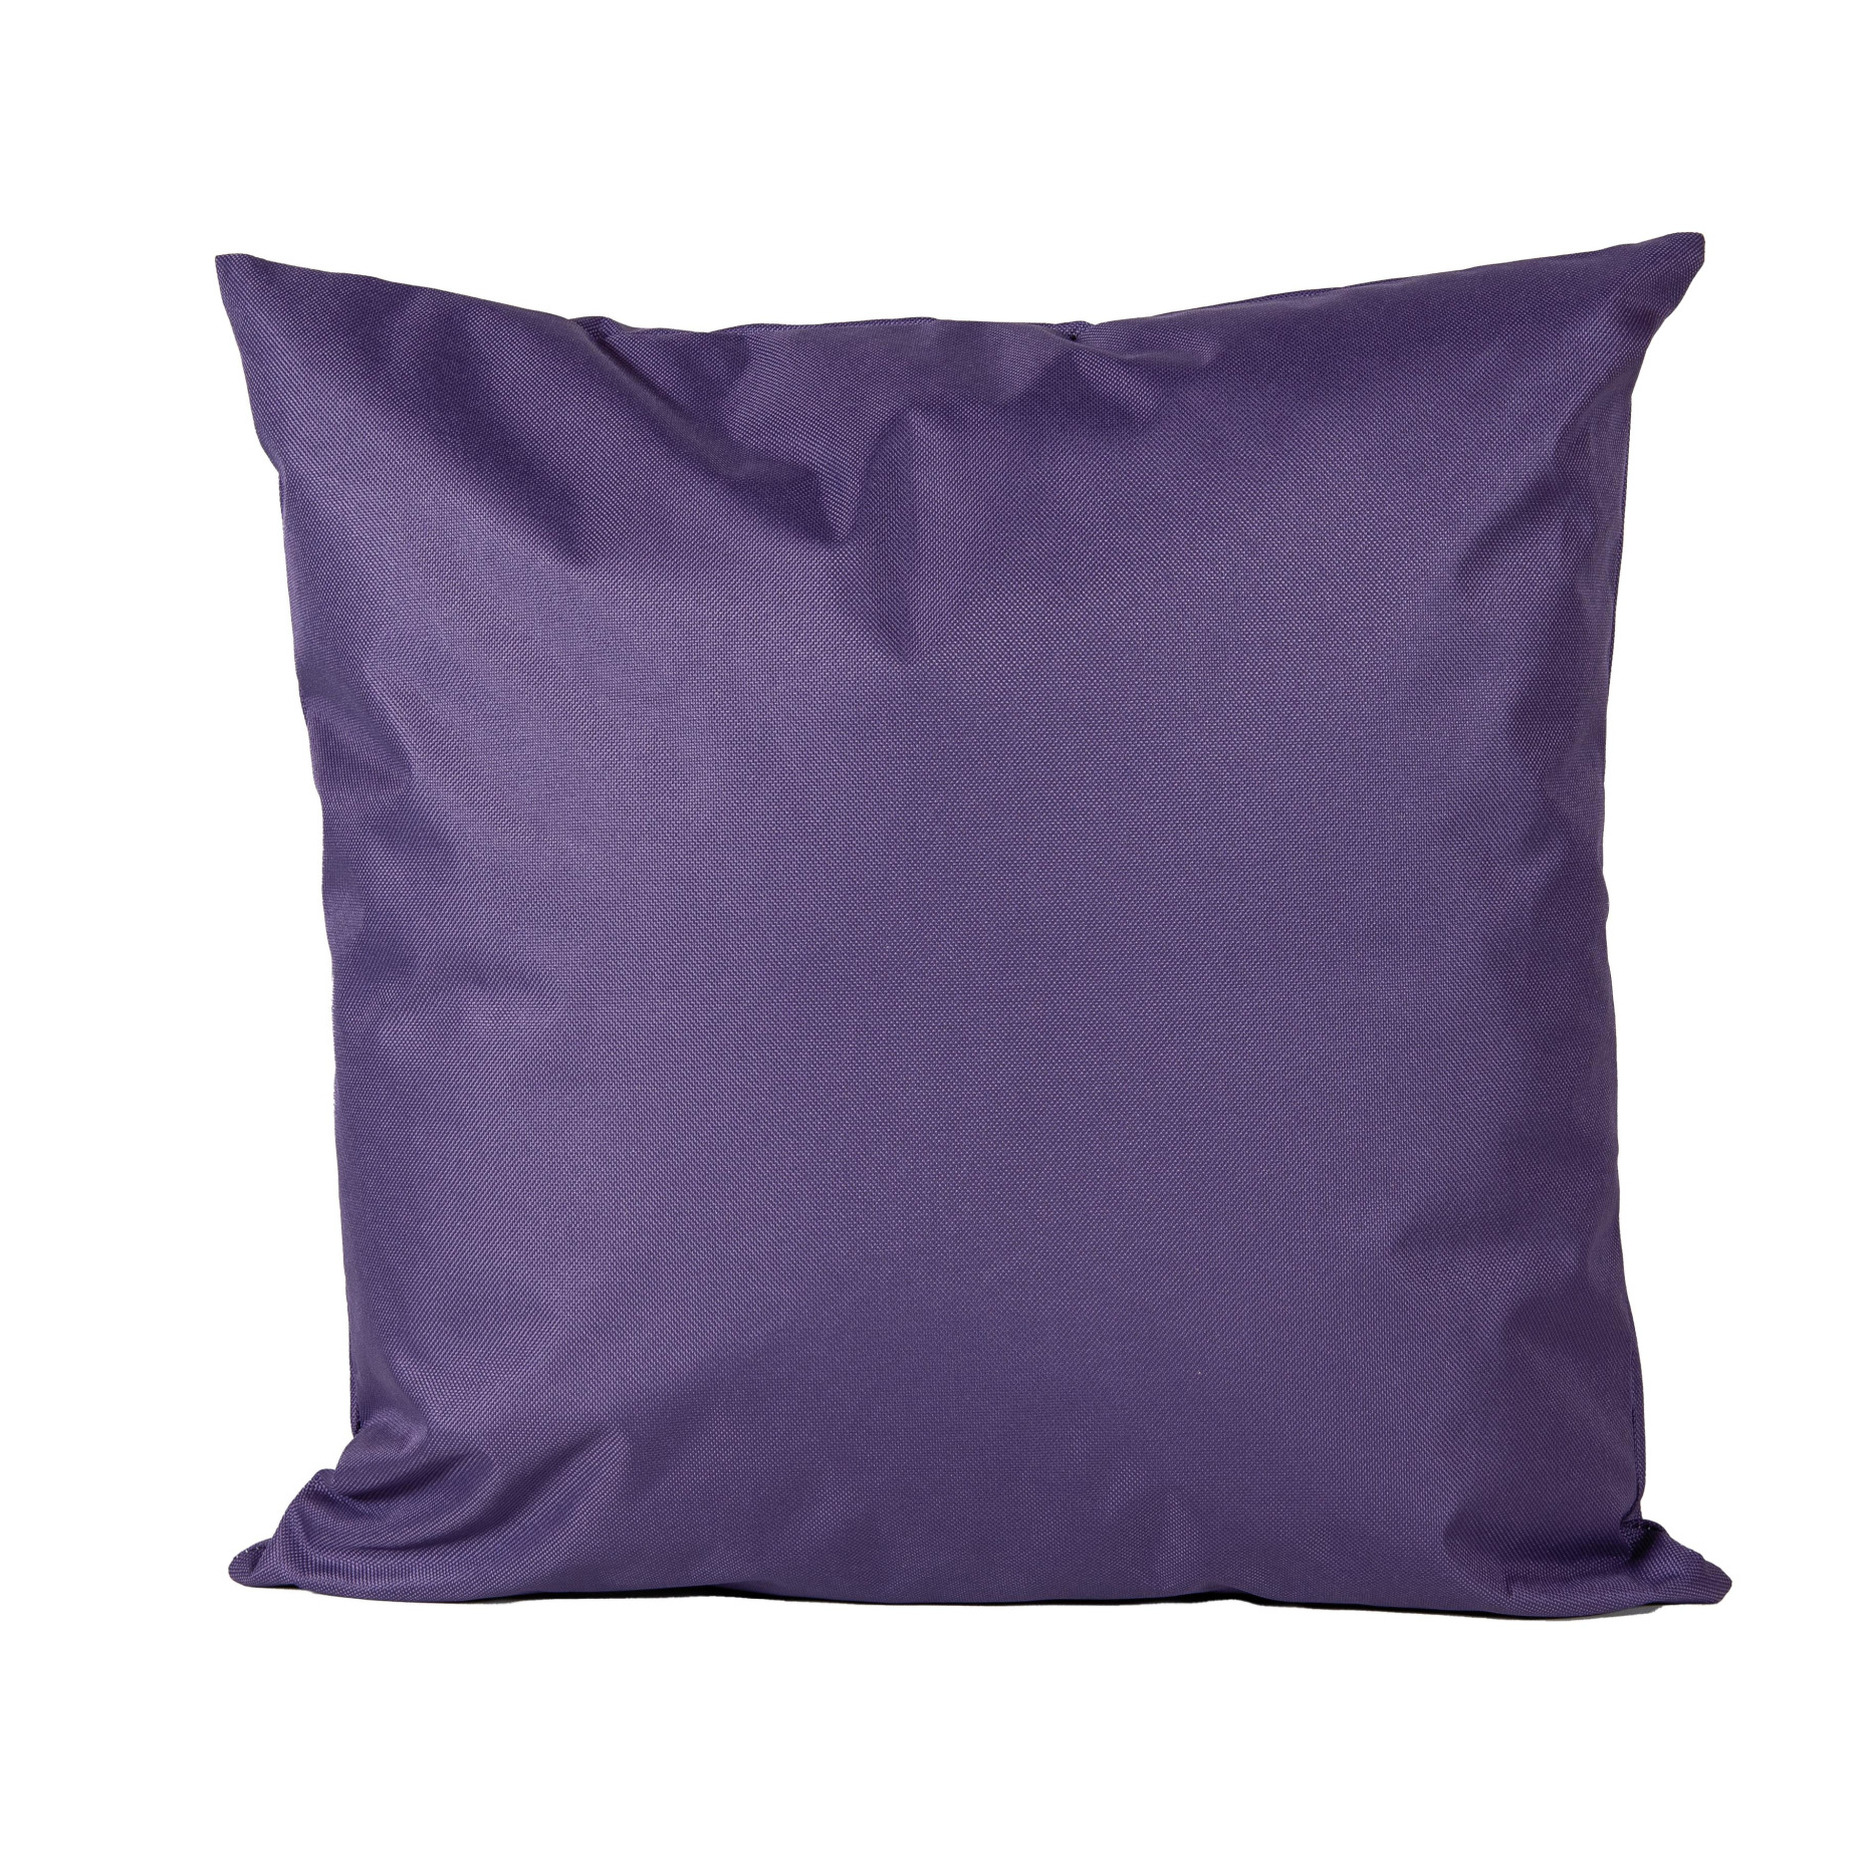 1x Bank-sier kussens voor binnen en buiten in de kleur paars 45 x 45 cm